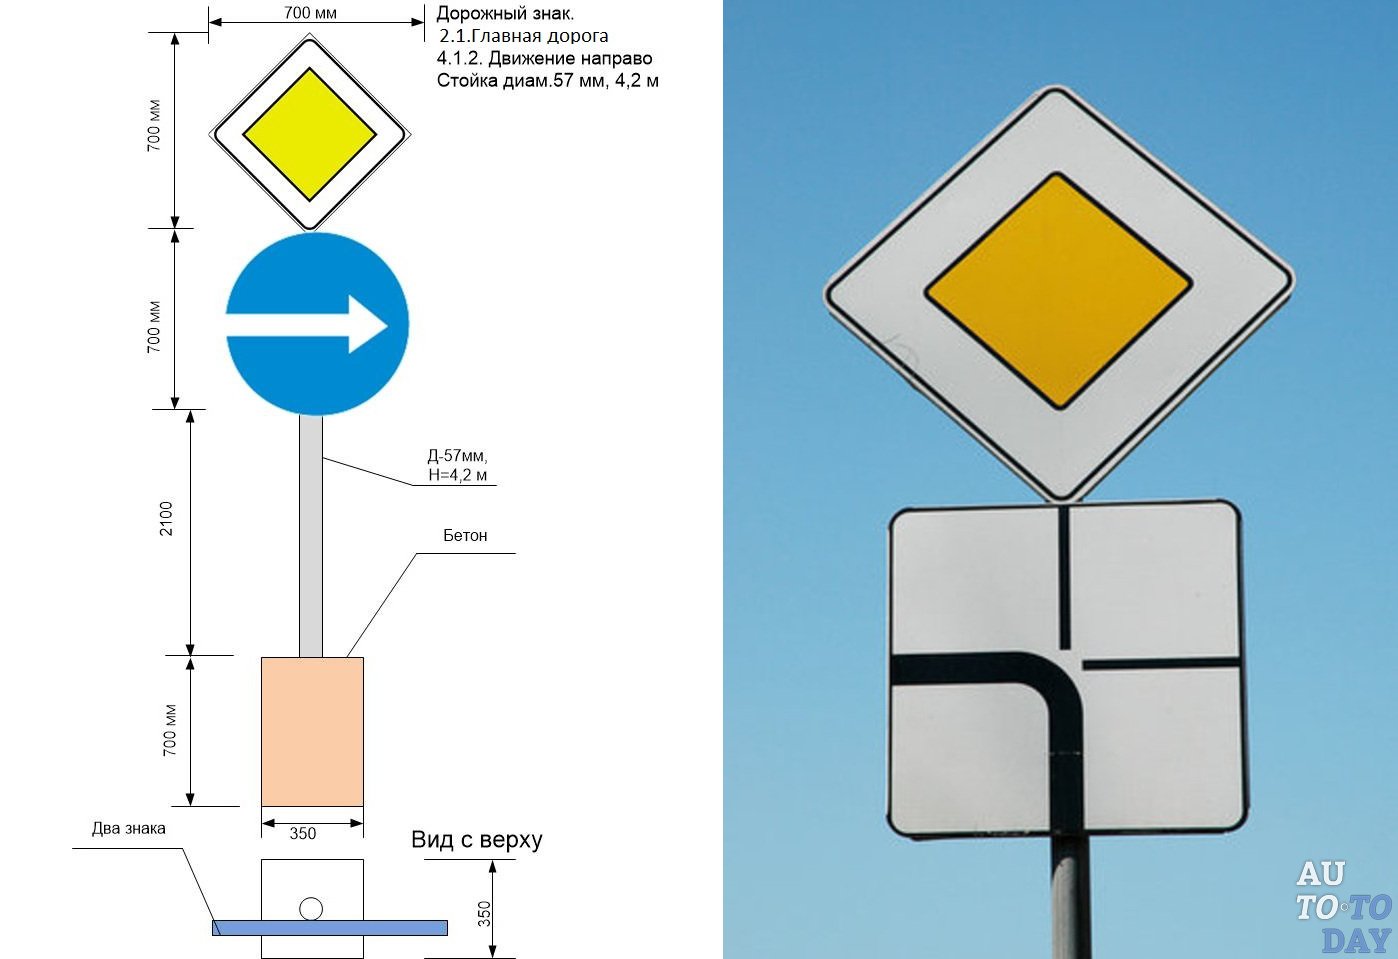 Дорожные знаки конструкция